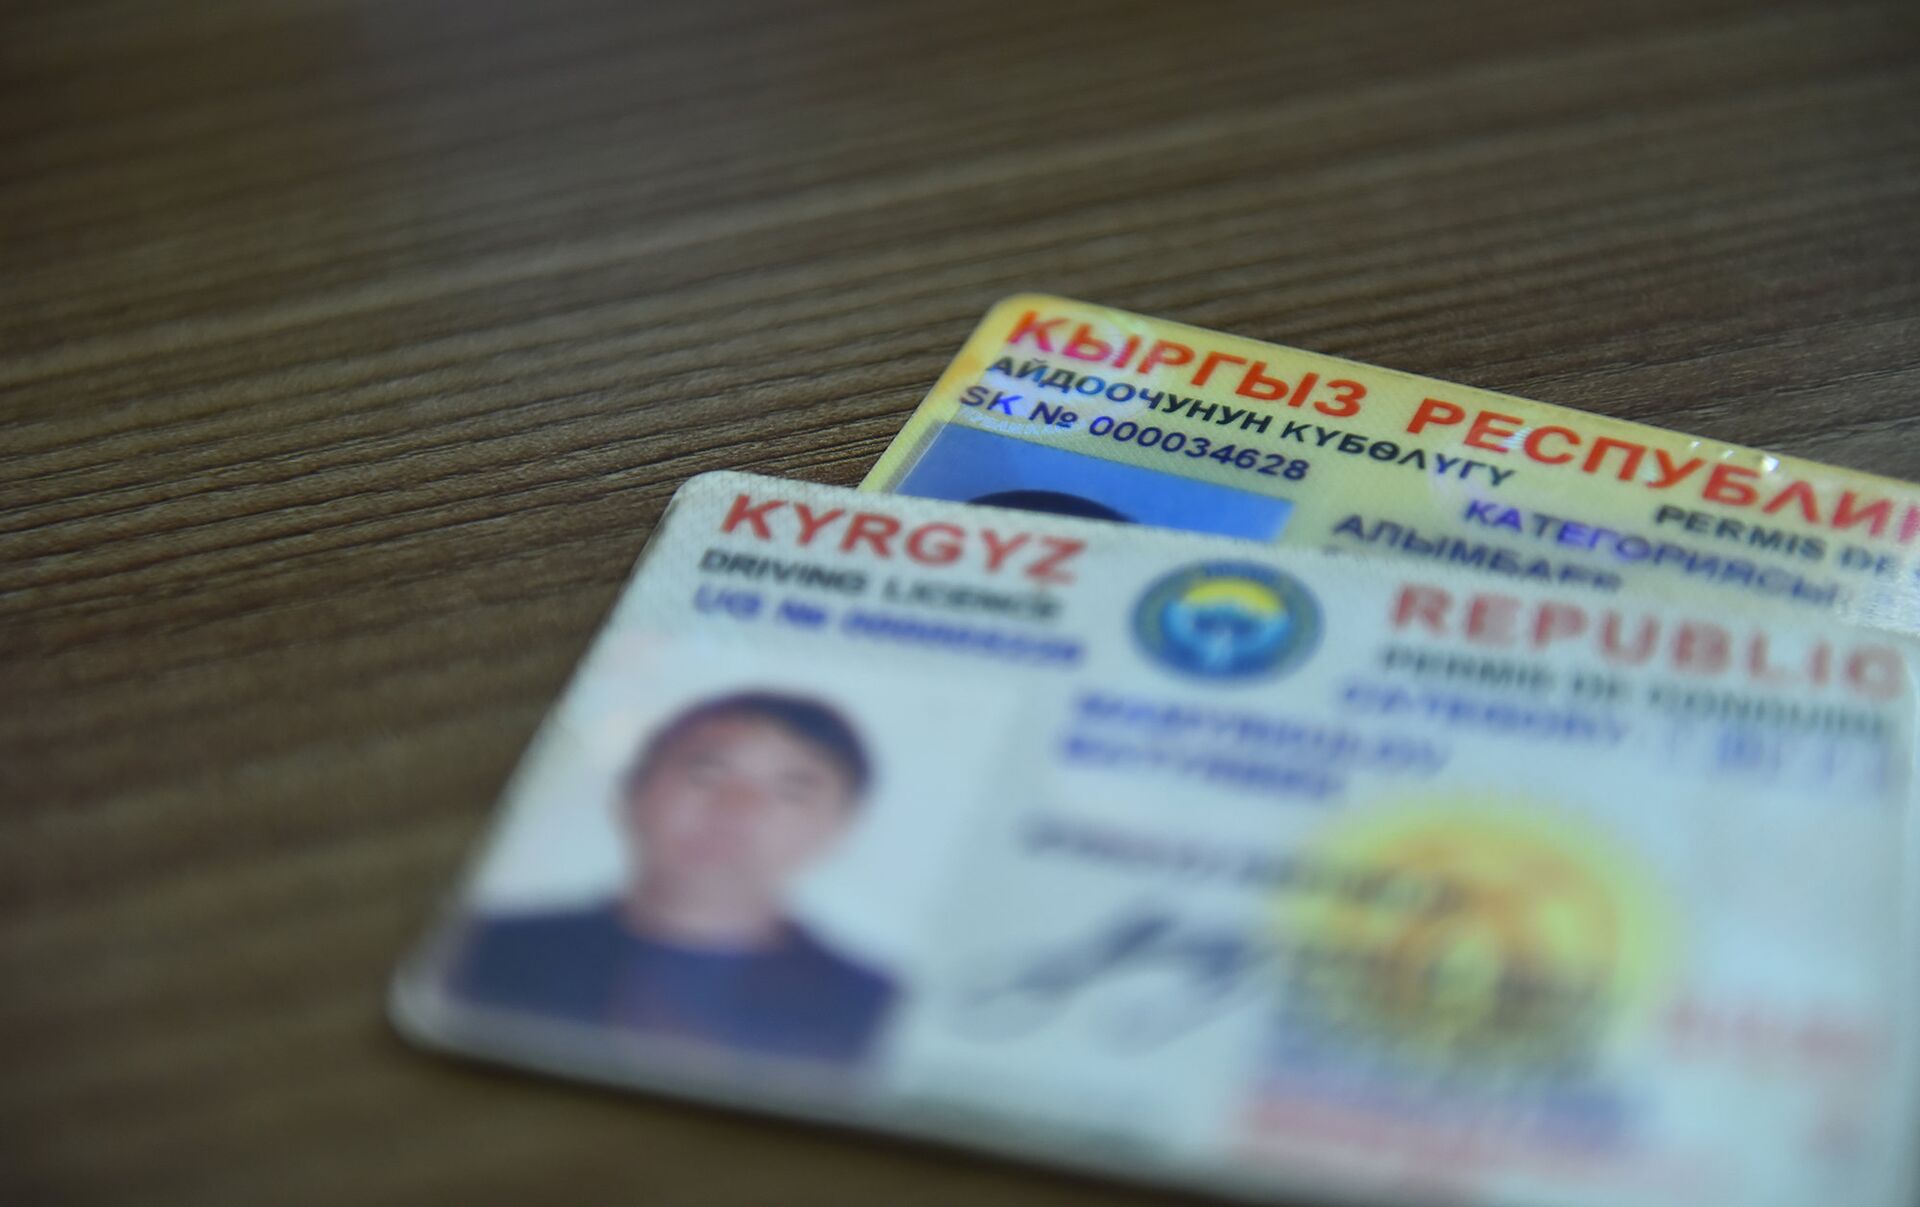 Кыргызстанский водительской удостоверение международного образца